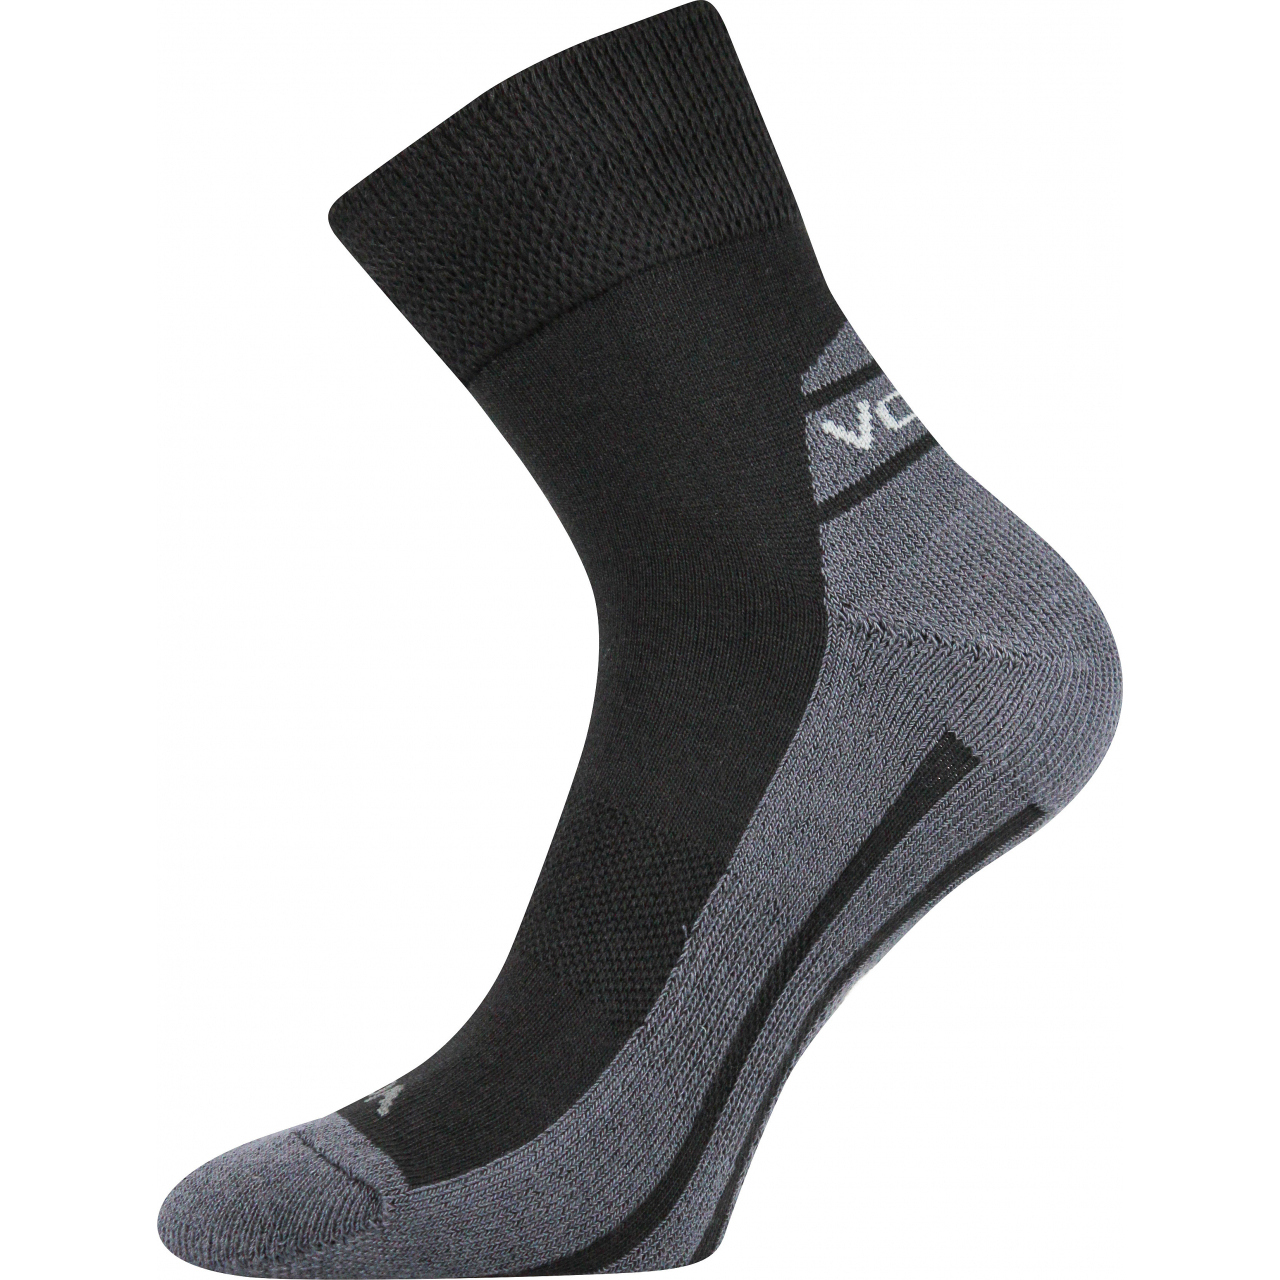 Ponožky sportovní Voxx Oliver - černé-šedé, 39-42